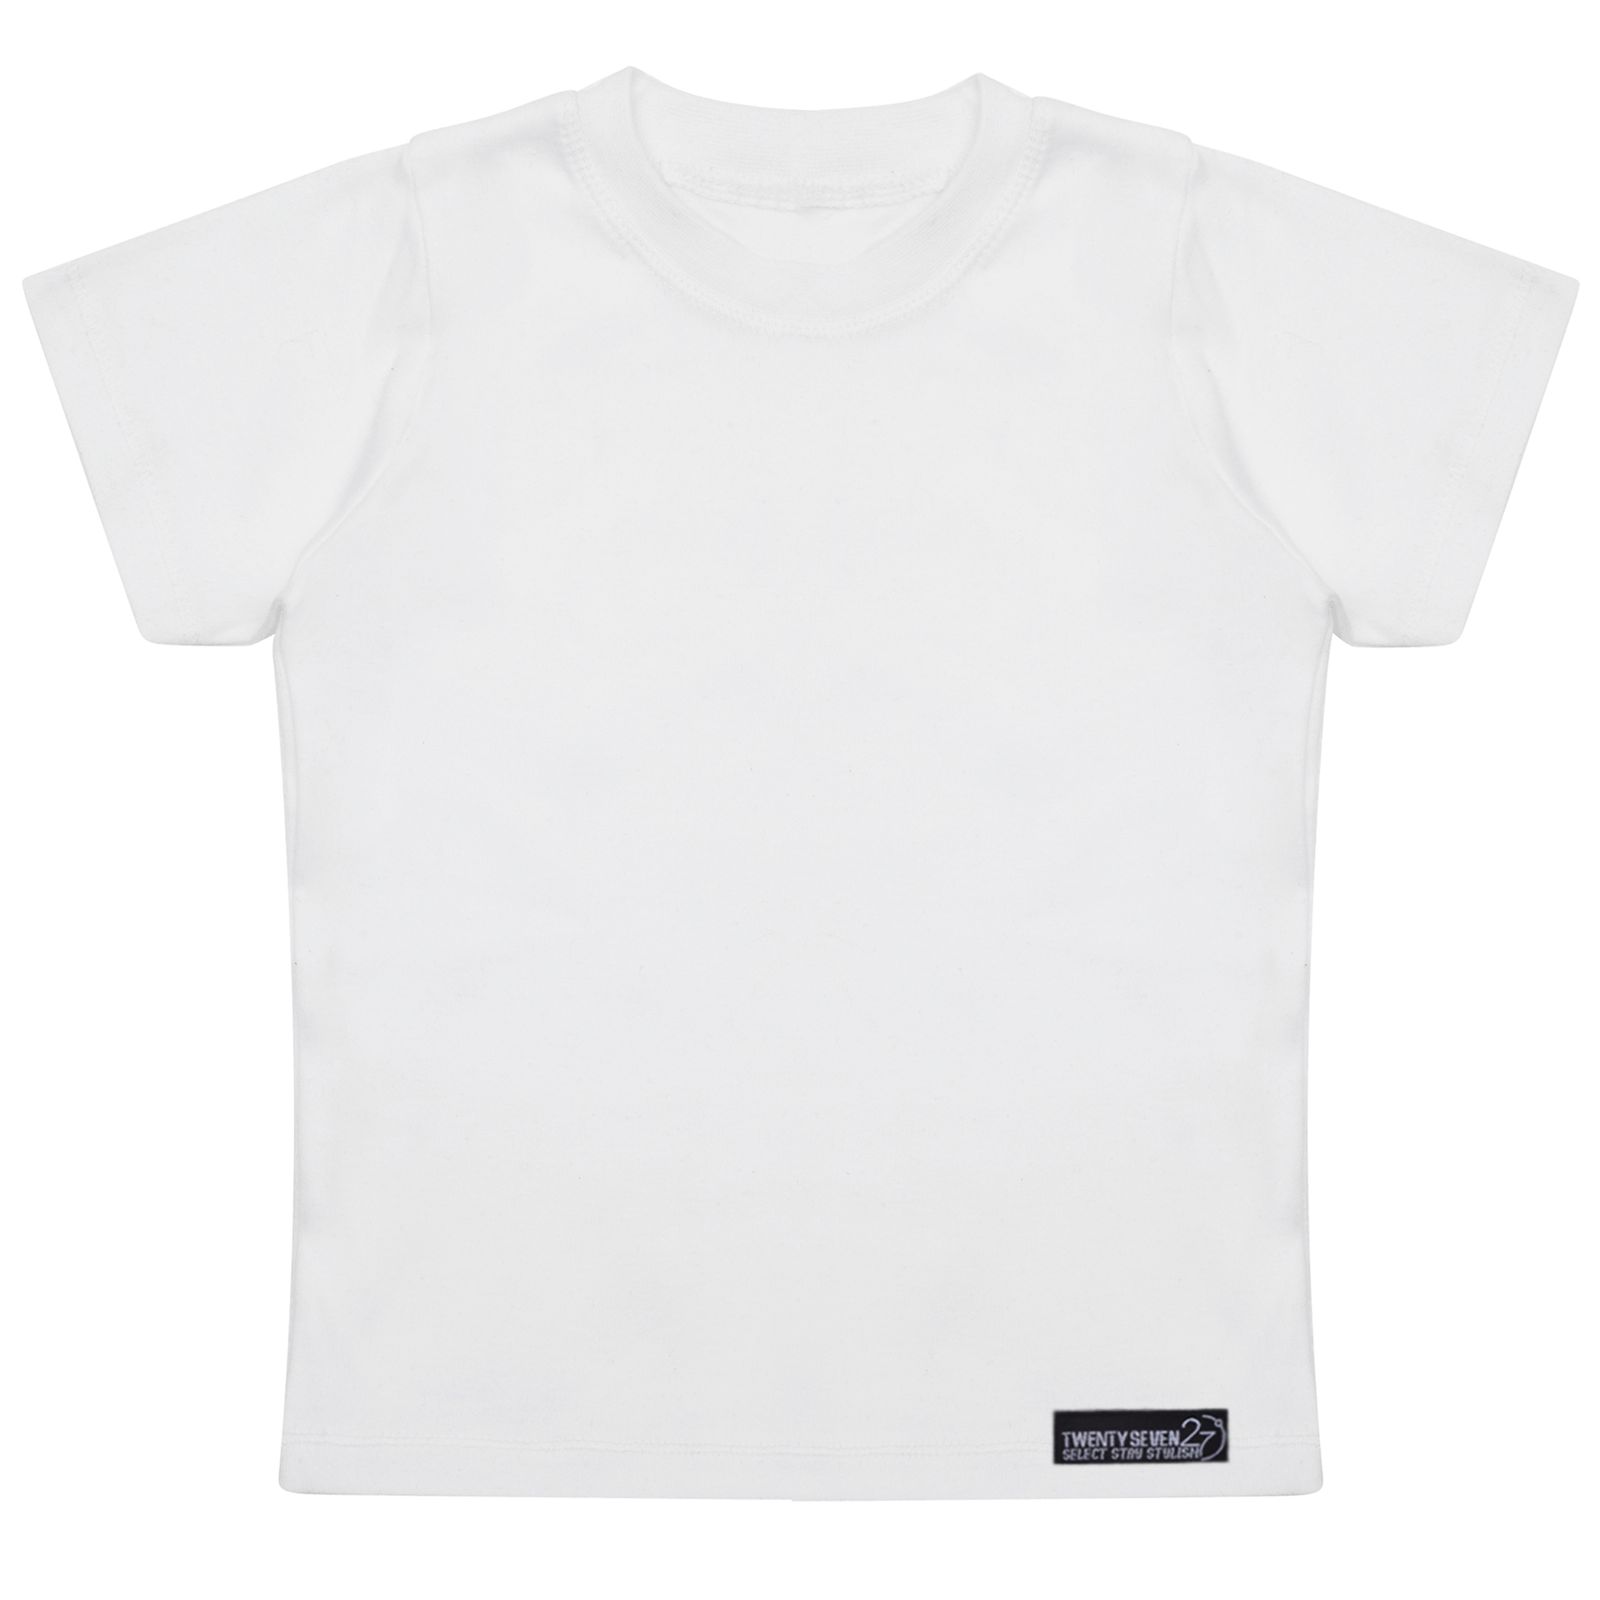 تی شرت آستین کوتاه دخترانه 27 مدل Tshirt White kids Simple کد MH1449 -  - 3